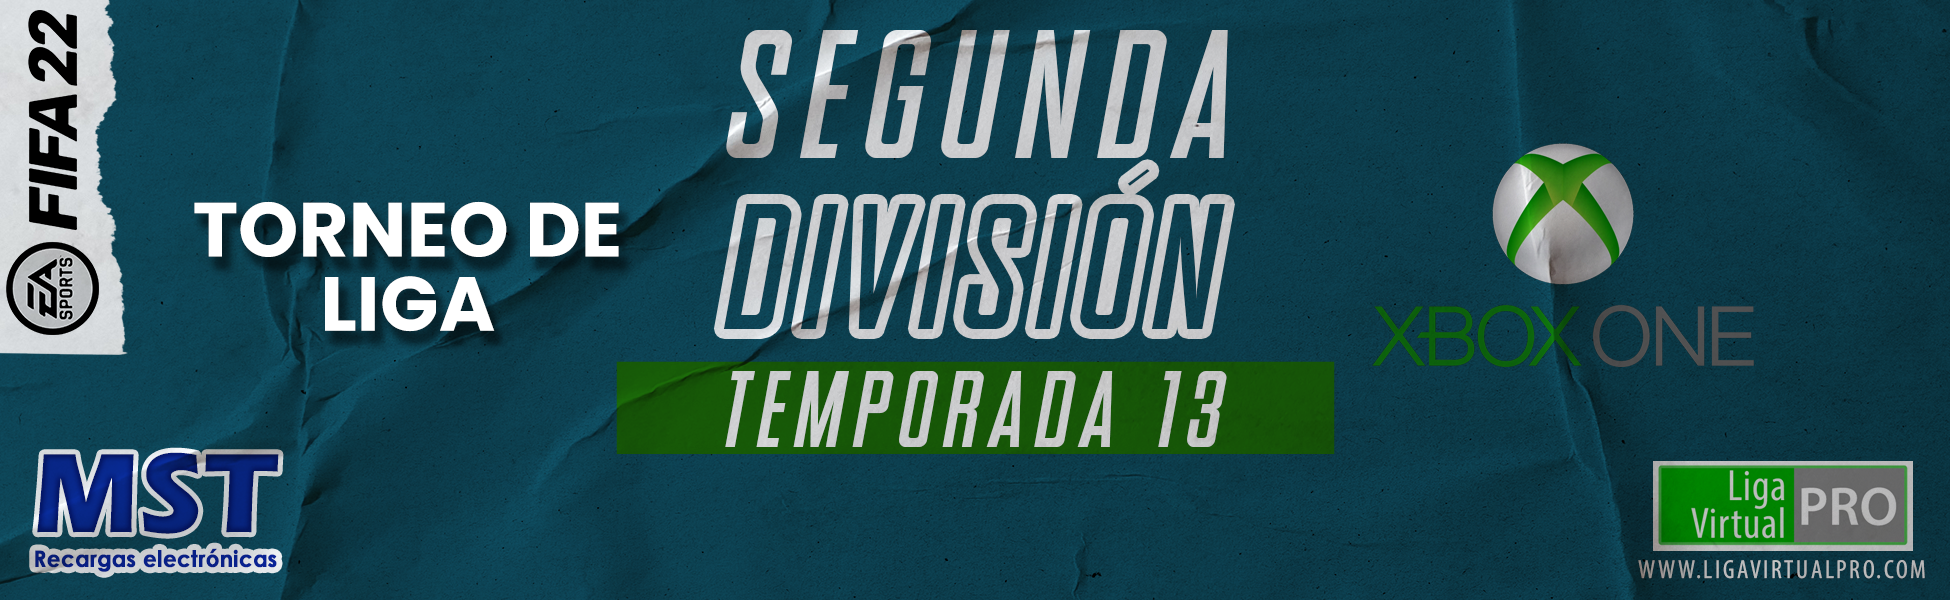 SEGUNDA DIVISIÓN XBOX ONE - TEMPORADA 13 .png